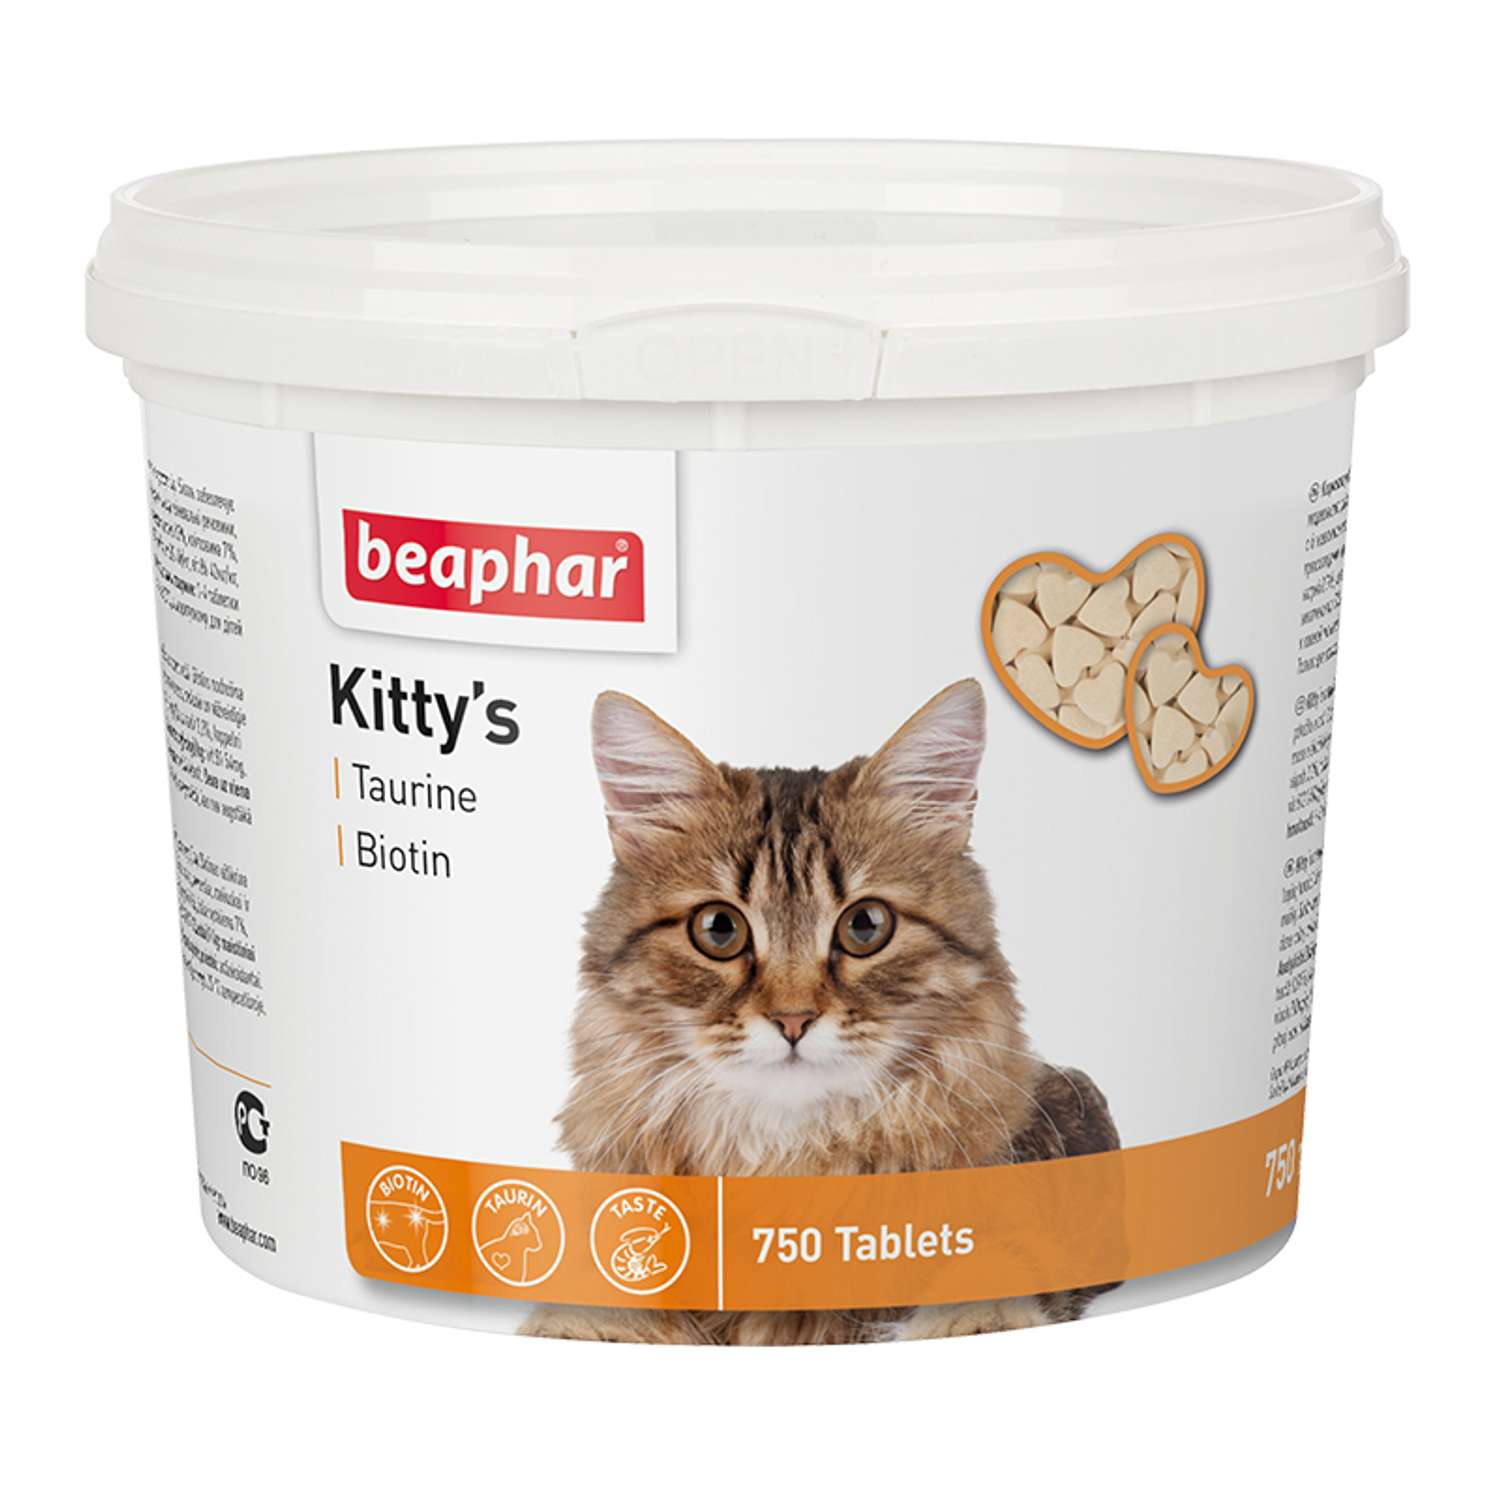 Витамины для кошек Beaphar Kittys Biotin таурин-биотин при недостатке витаминов 750таблеток - фото 1